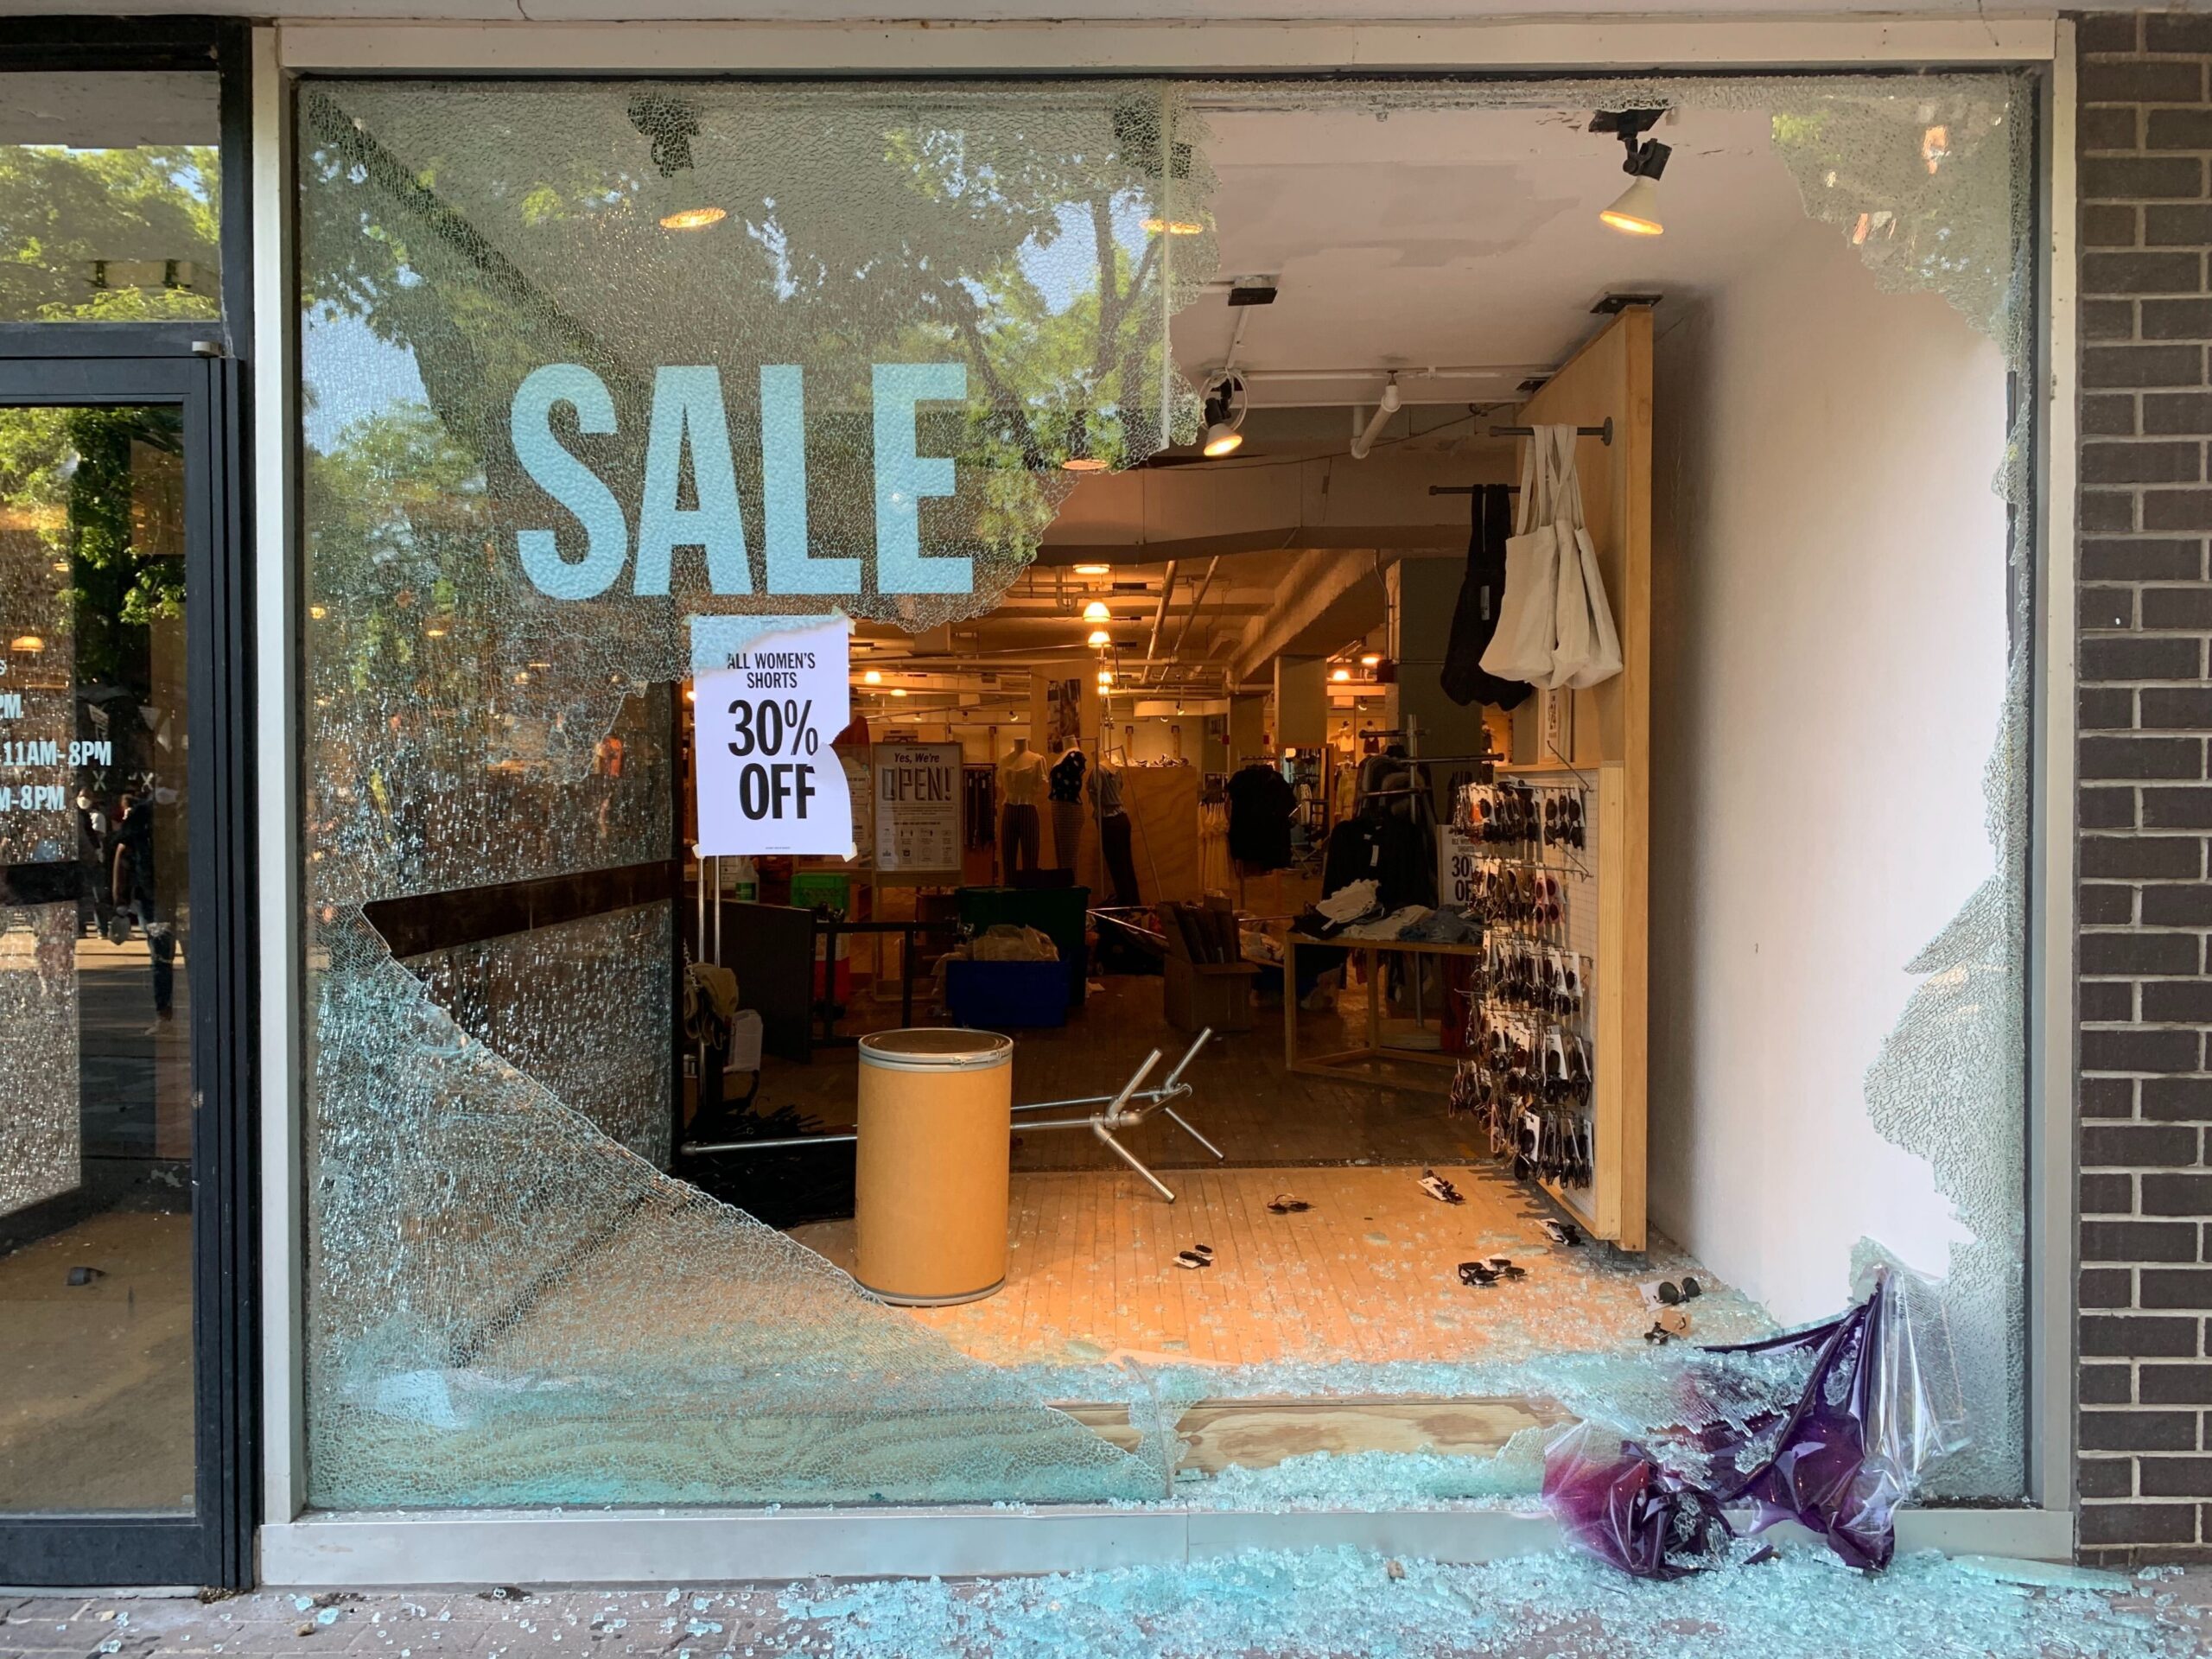 Smashed store window